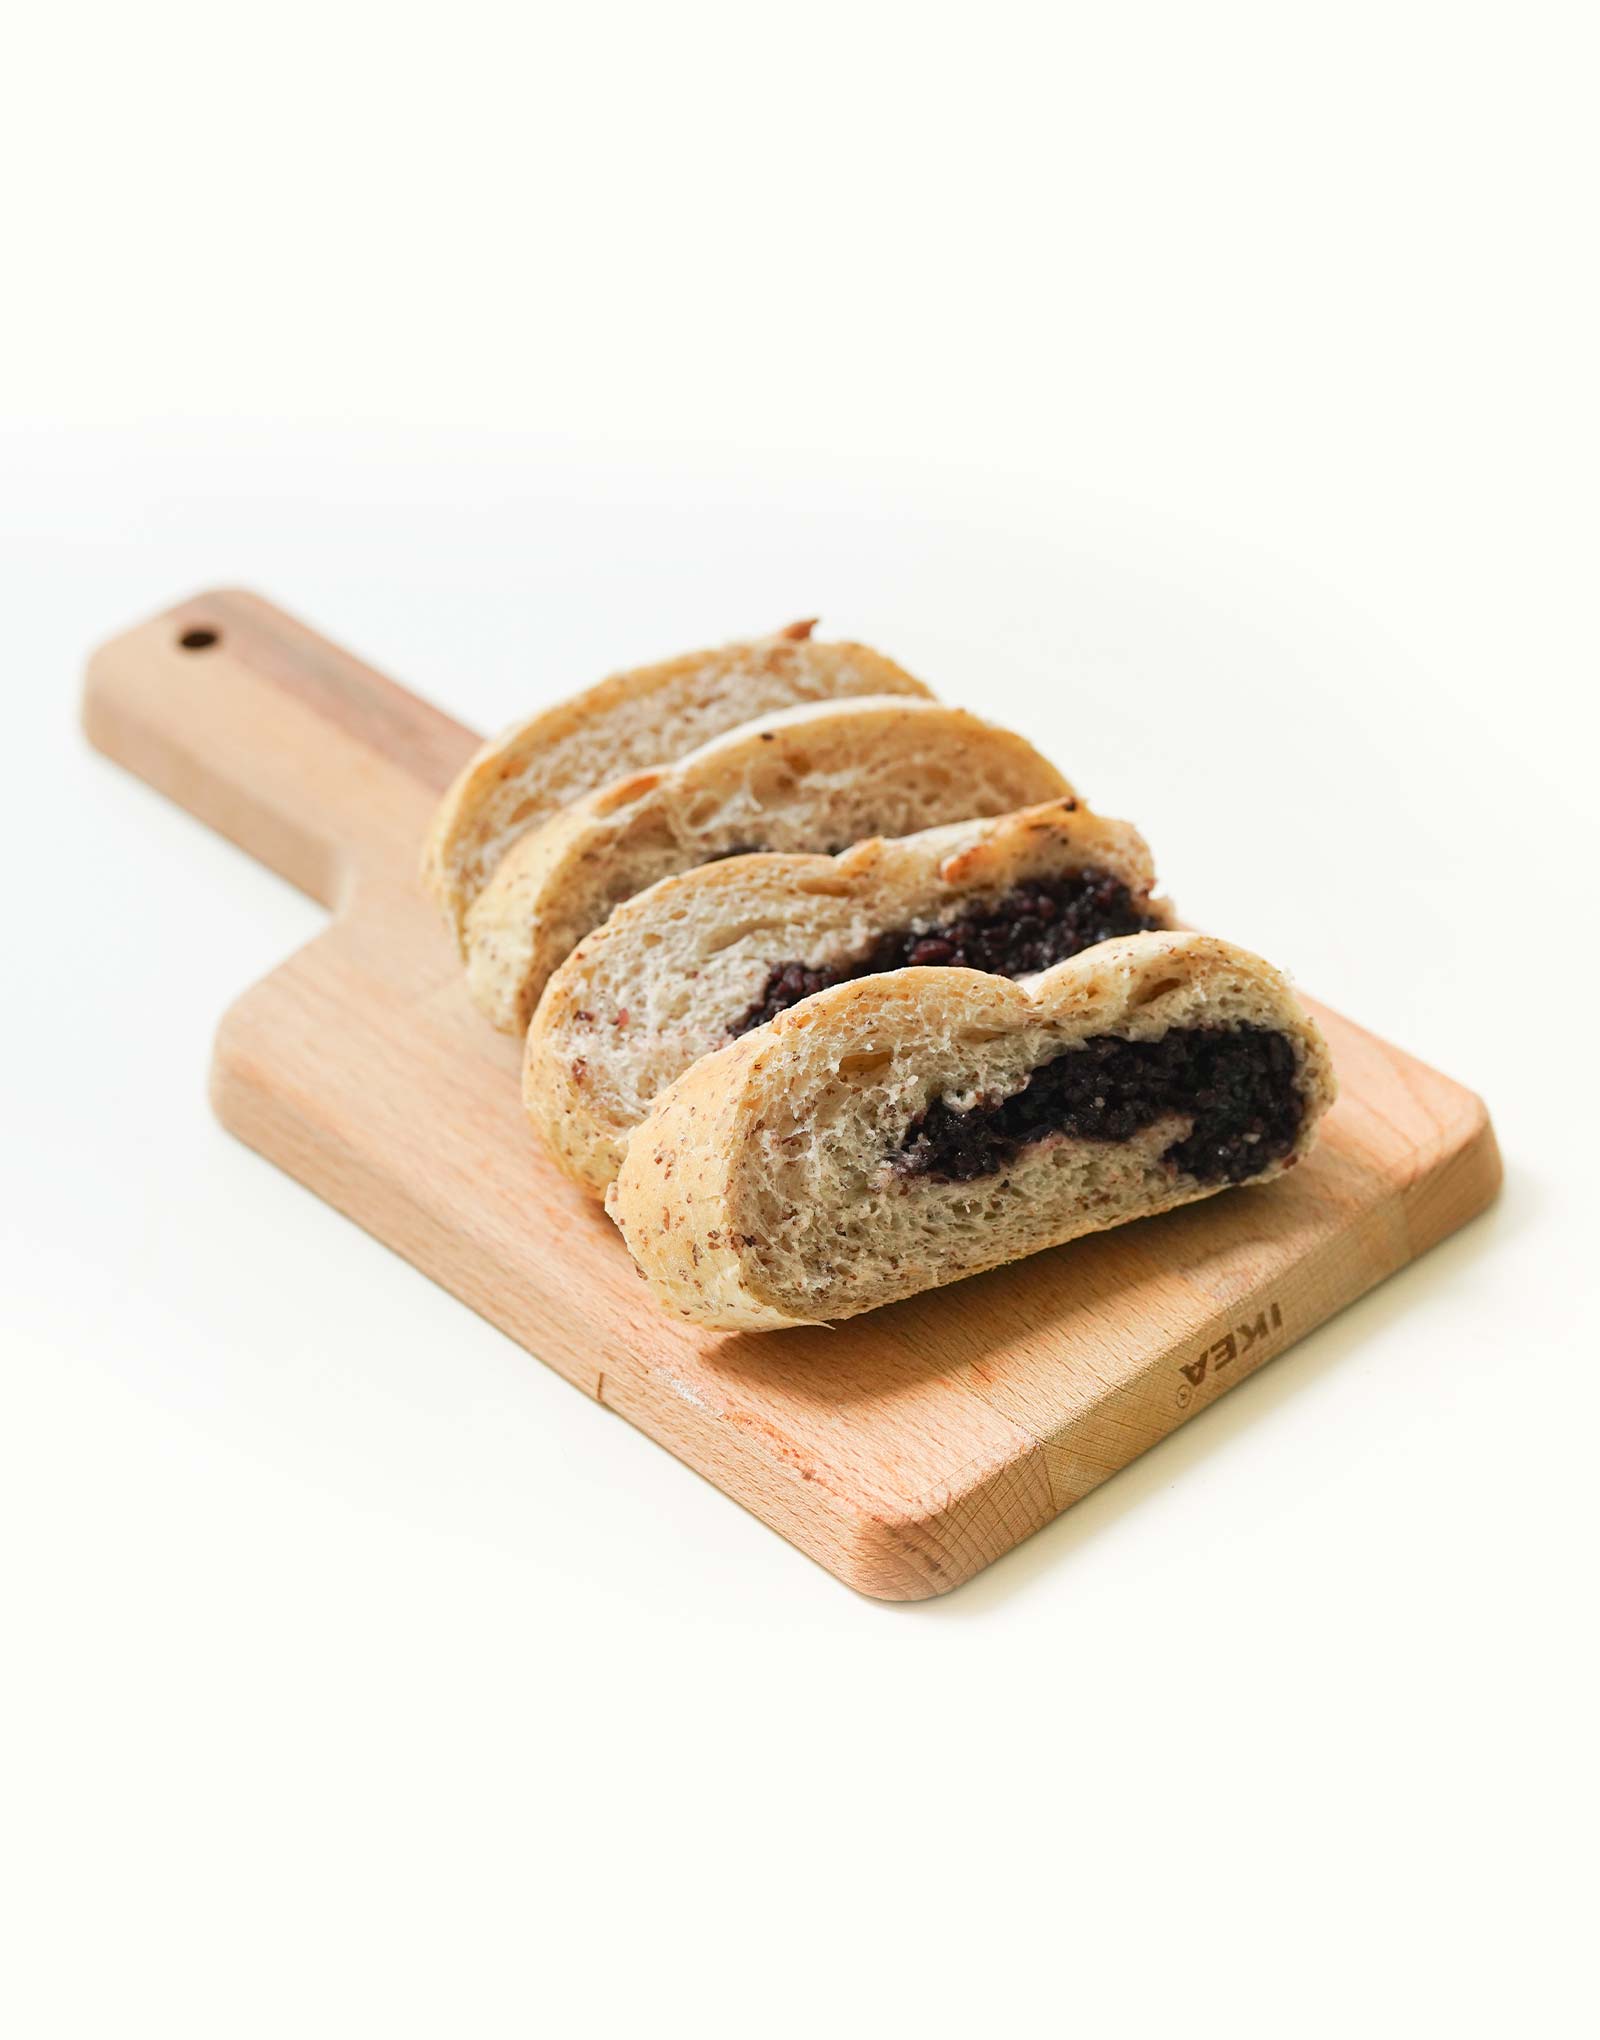 Blackberry Stuffed Bread